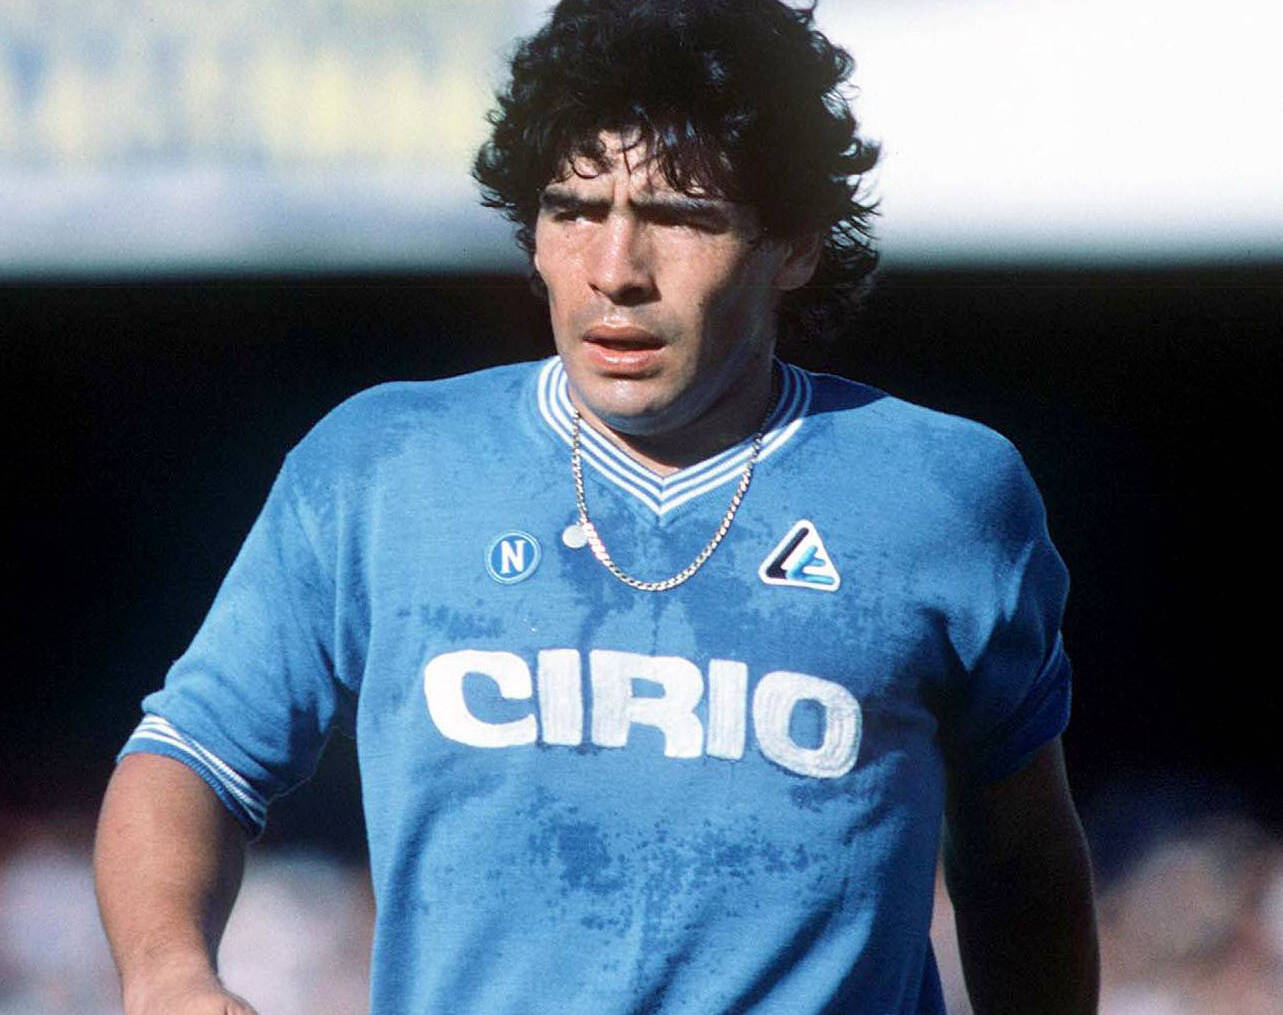 1283px x 1015px - Maradona era basso, imperfetto, somigliava ai coetanei, oggi i giocatori  sono di plasticaÂ» - ilNapolista